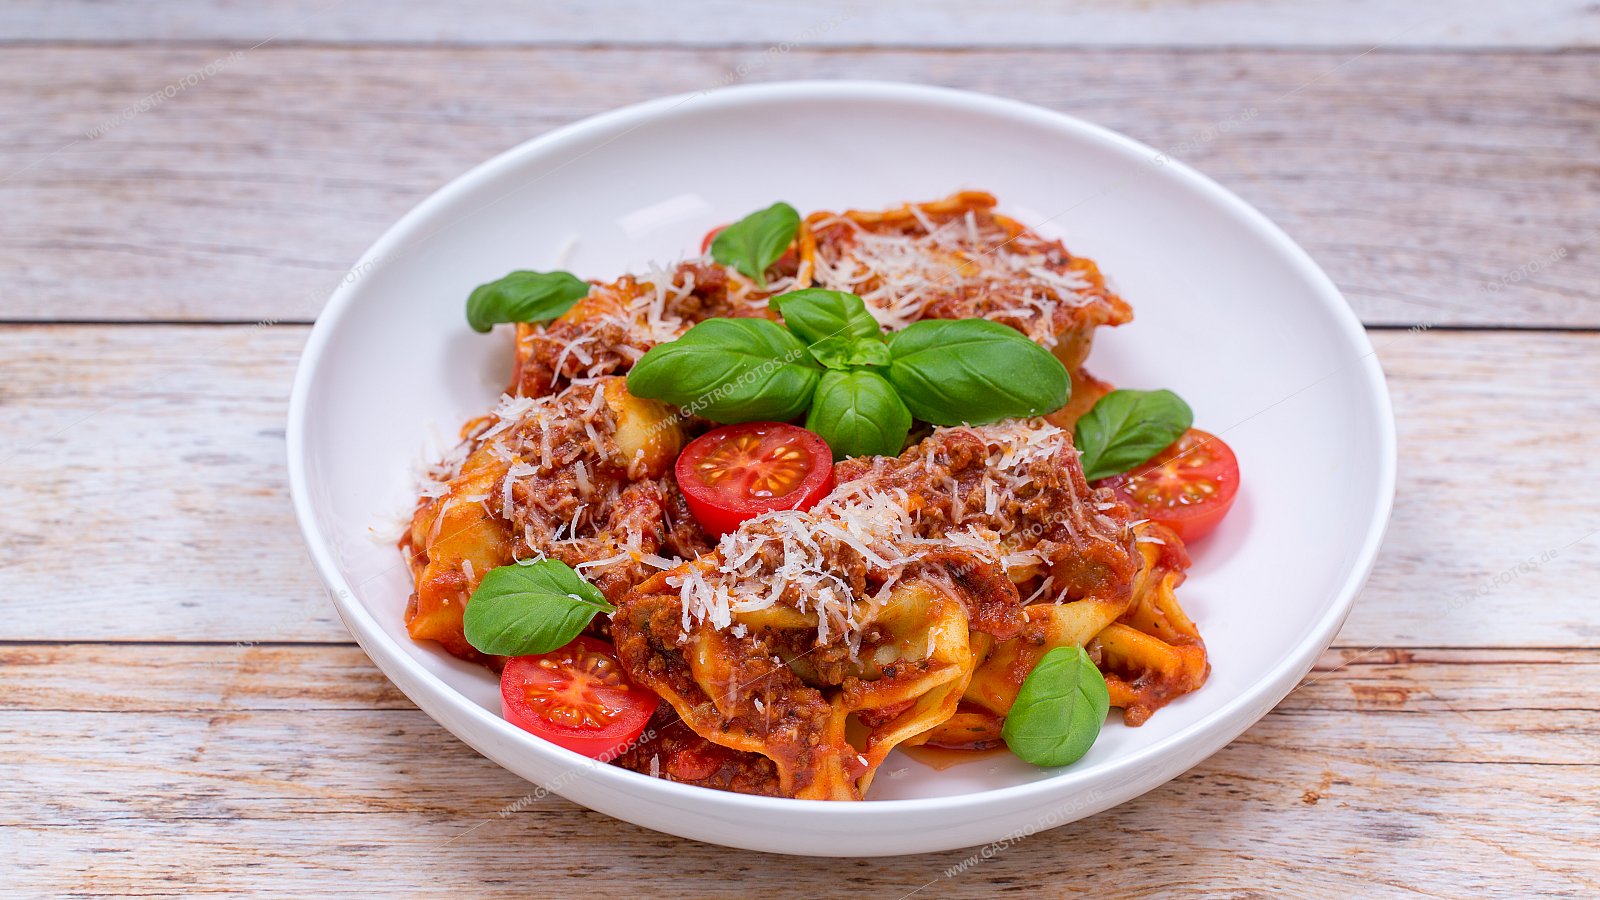 Tortellini in Tomaten-Hackfleischsauce - Nudelgerichte mit Fleisch